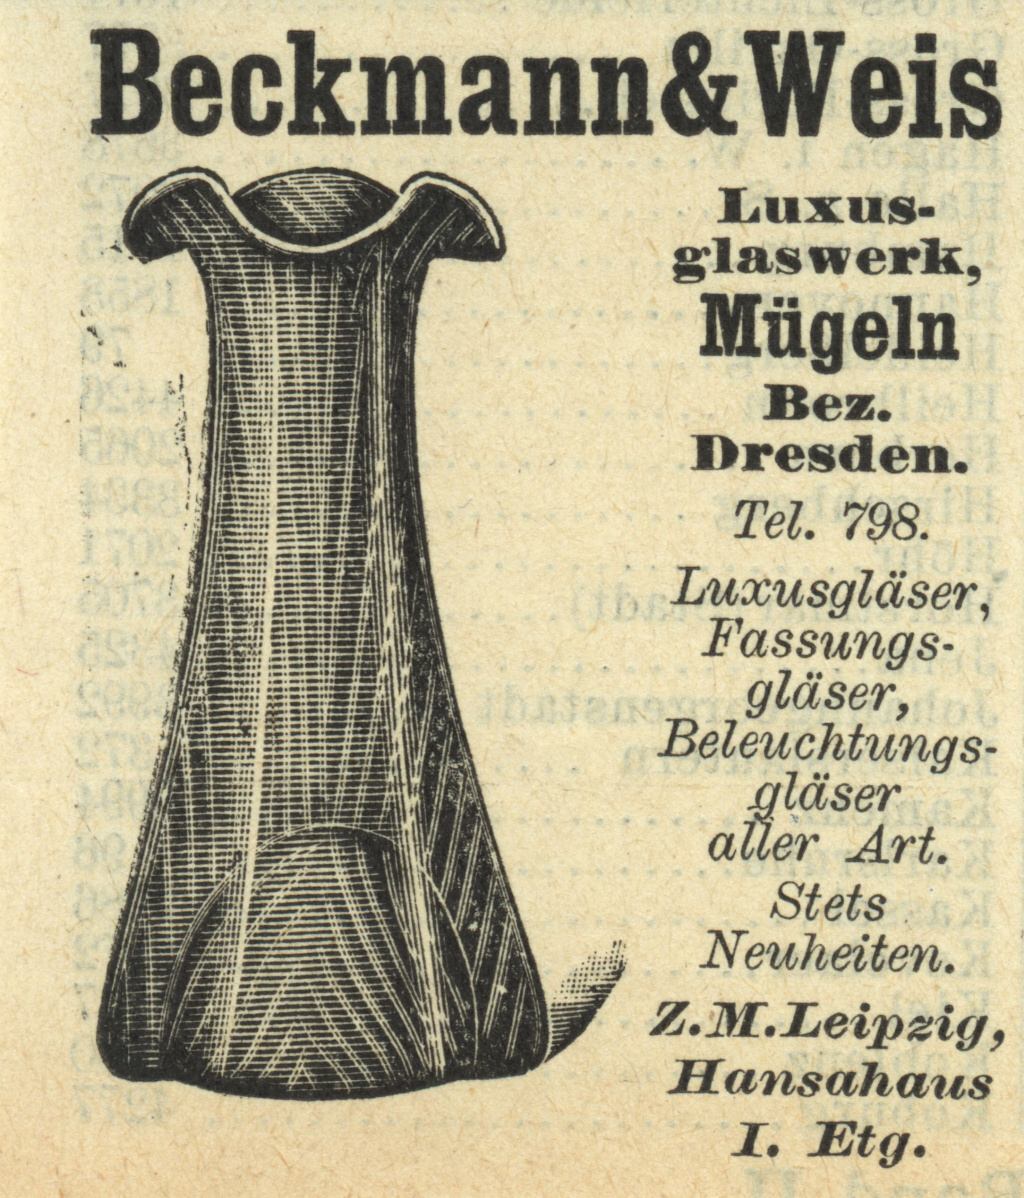 "Beckmann & Weis 1908"